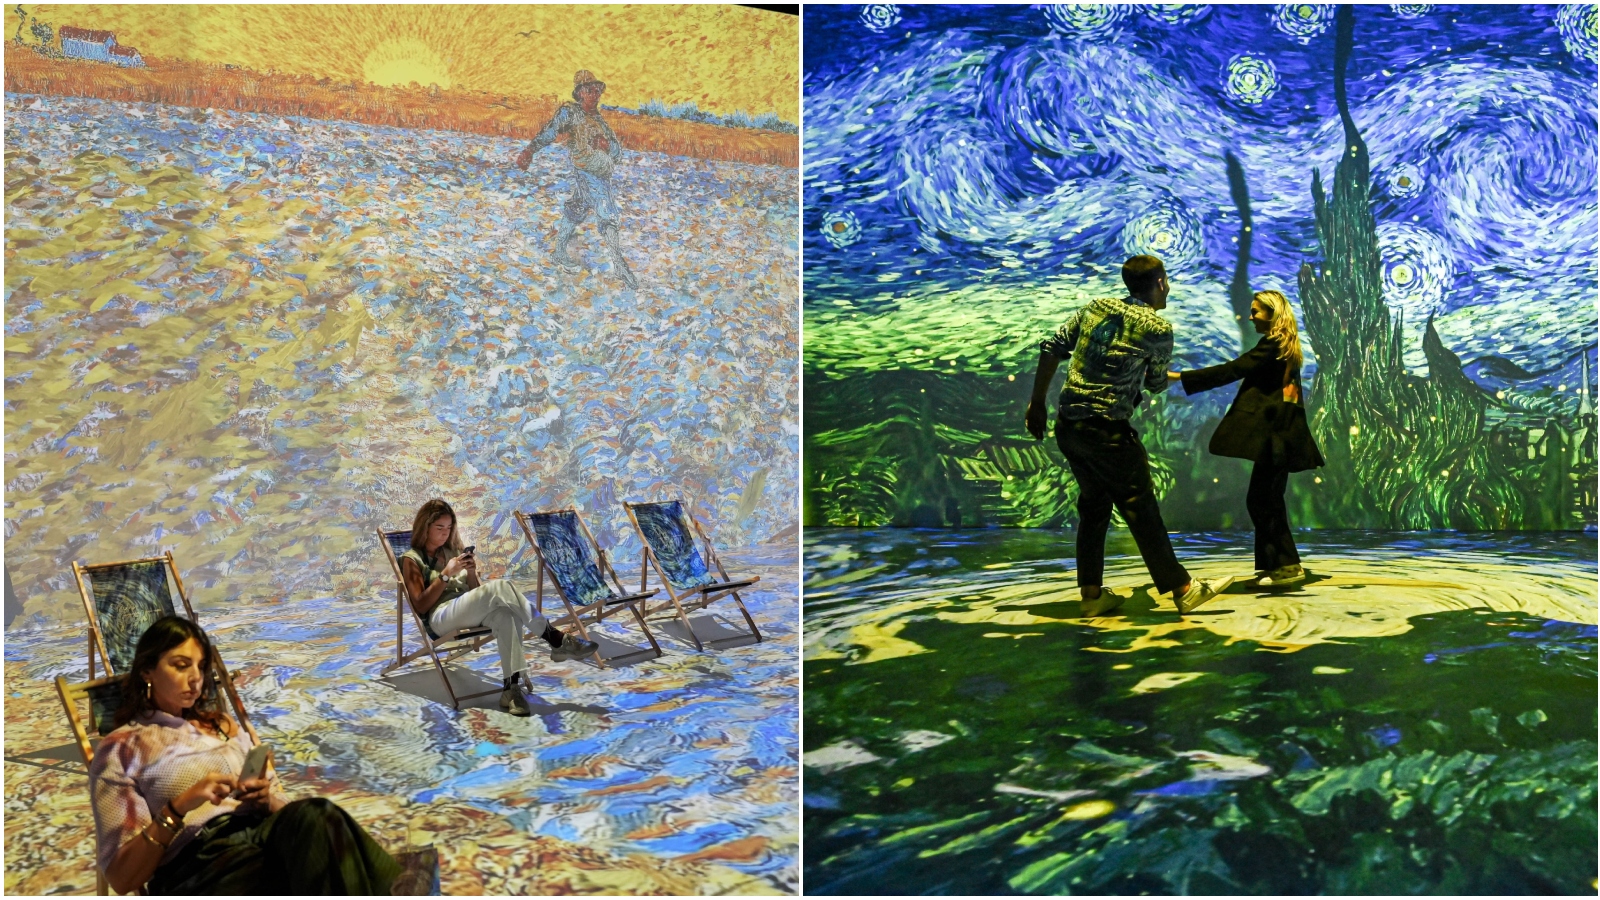 Zvjezdane noći i polja suncokreta: Zahvaljujući ovoj izložbi van Gogha vidimo u novom izdanju